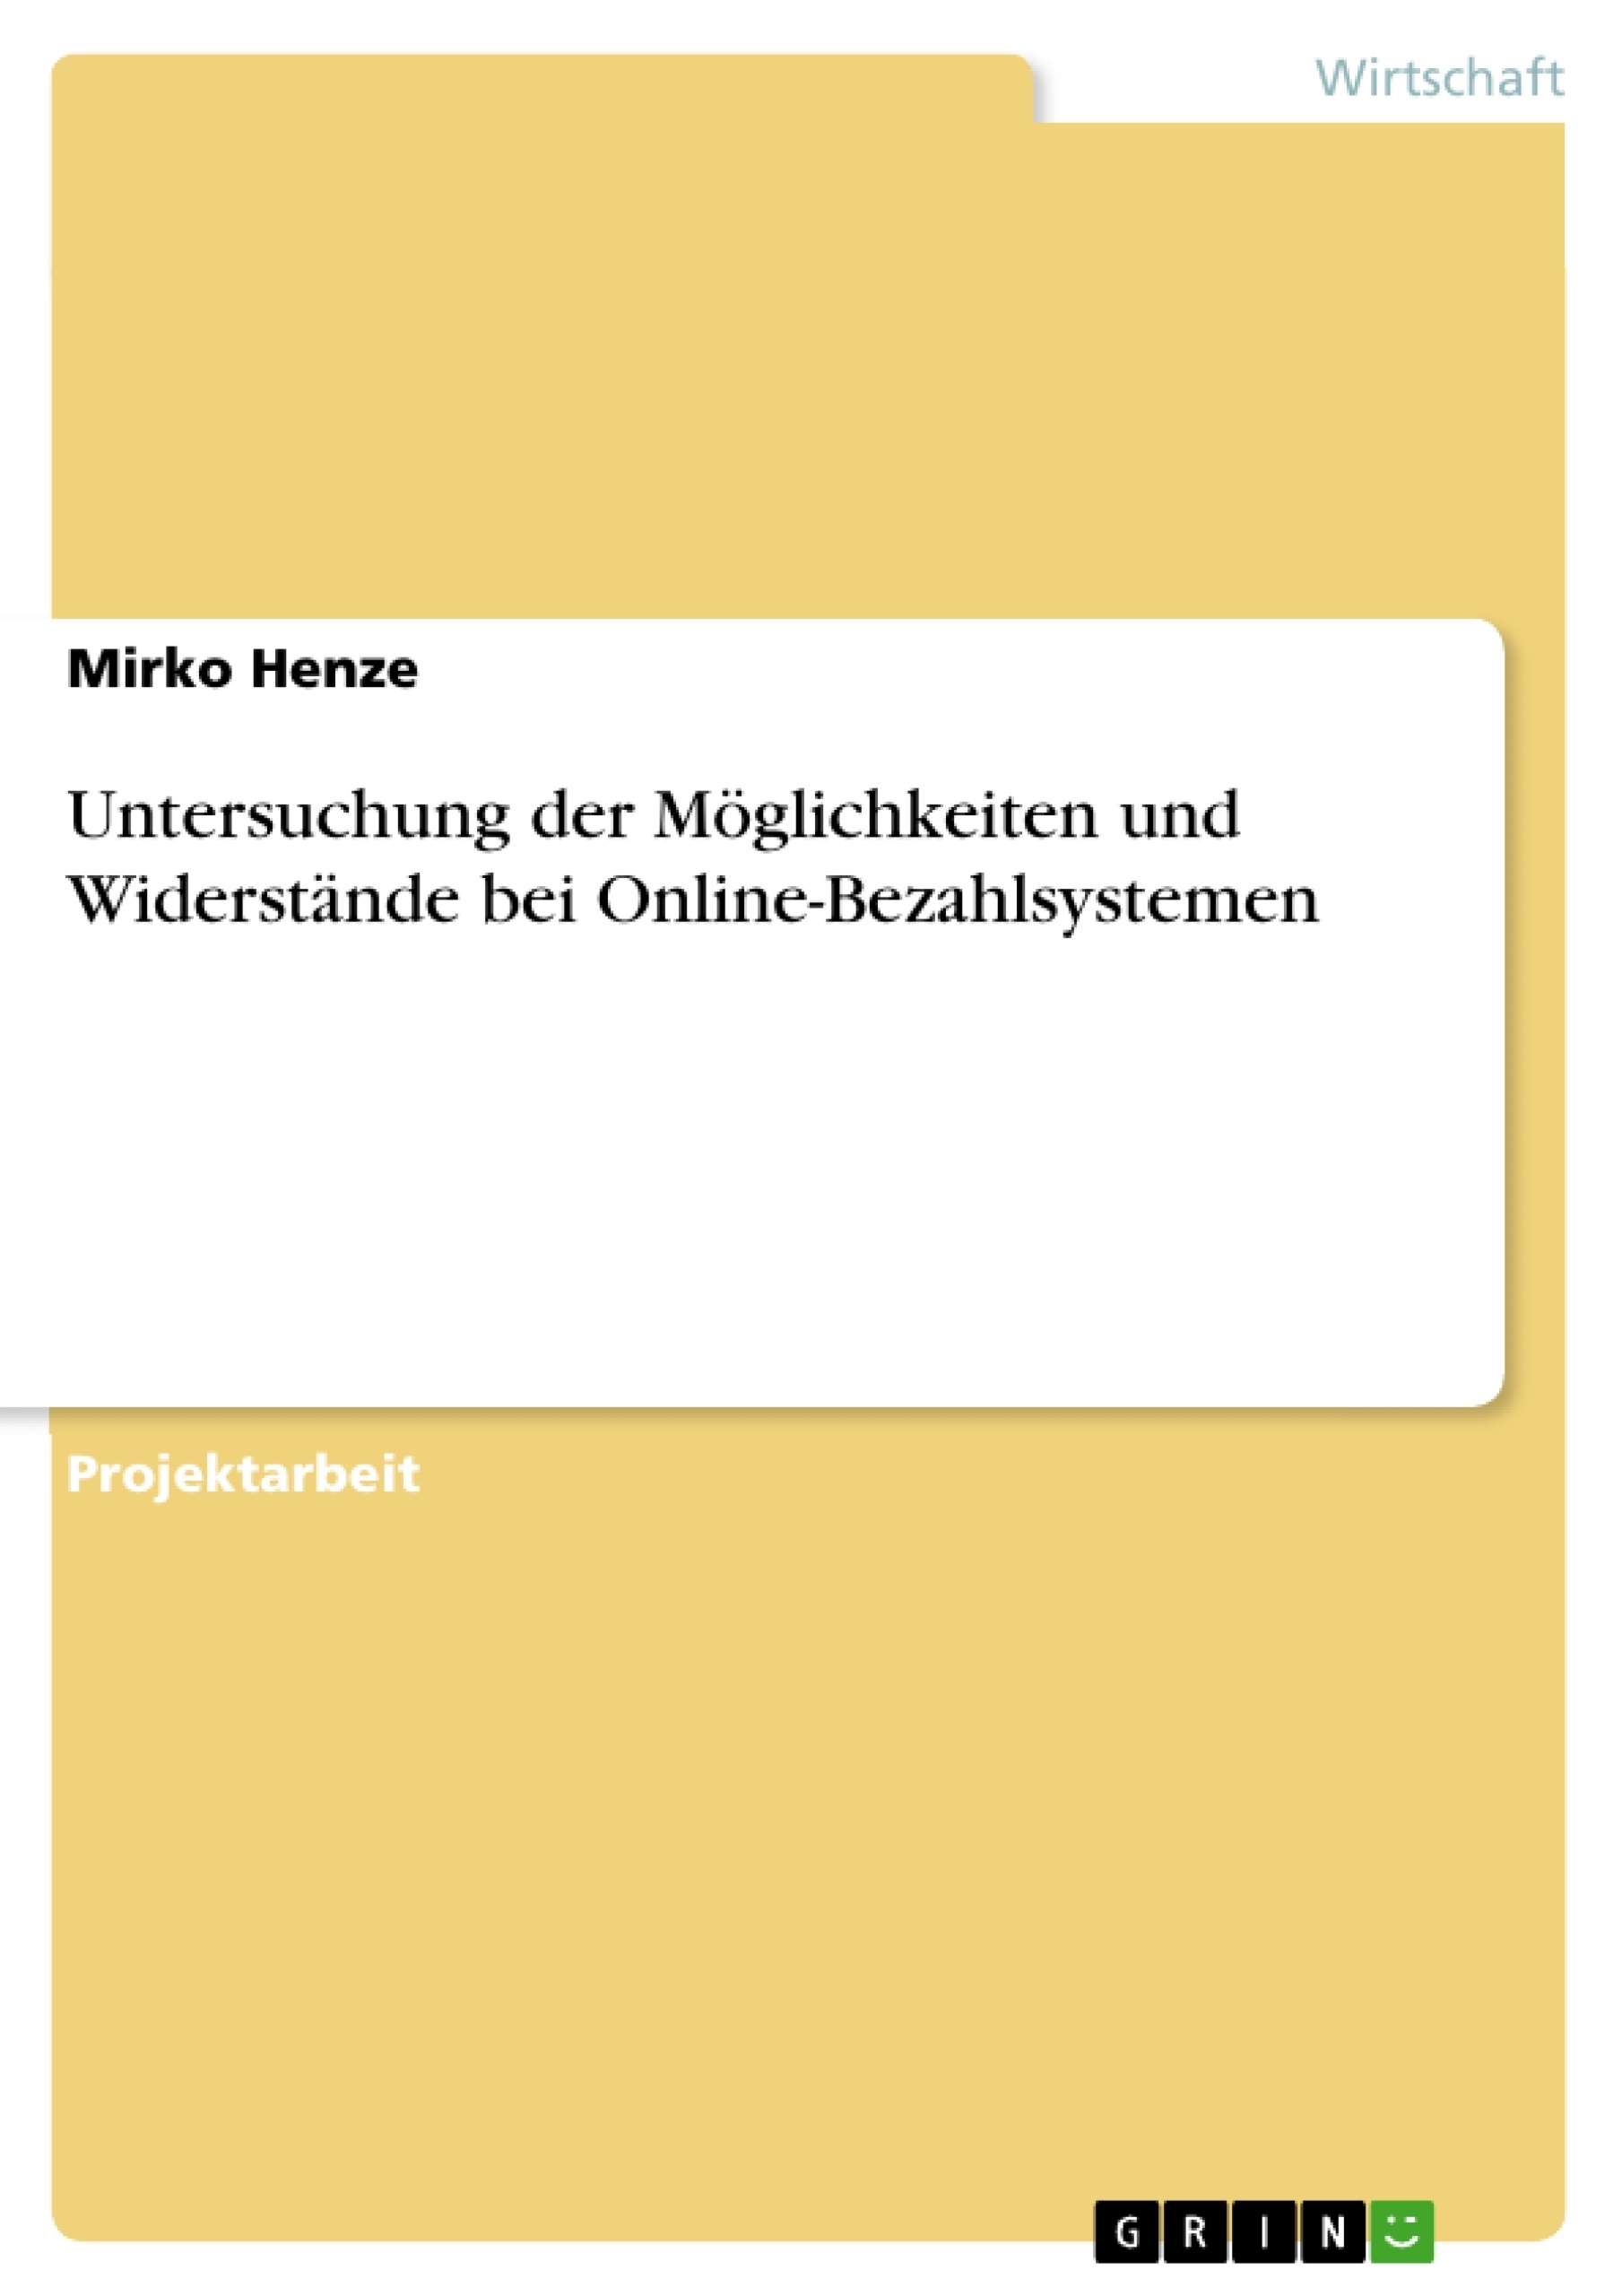 Titre: Untersuchung der Möglichkeiten und Widerstände bei Online-Bezahlsystemen